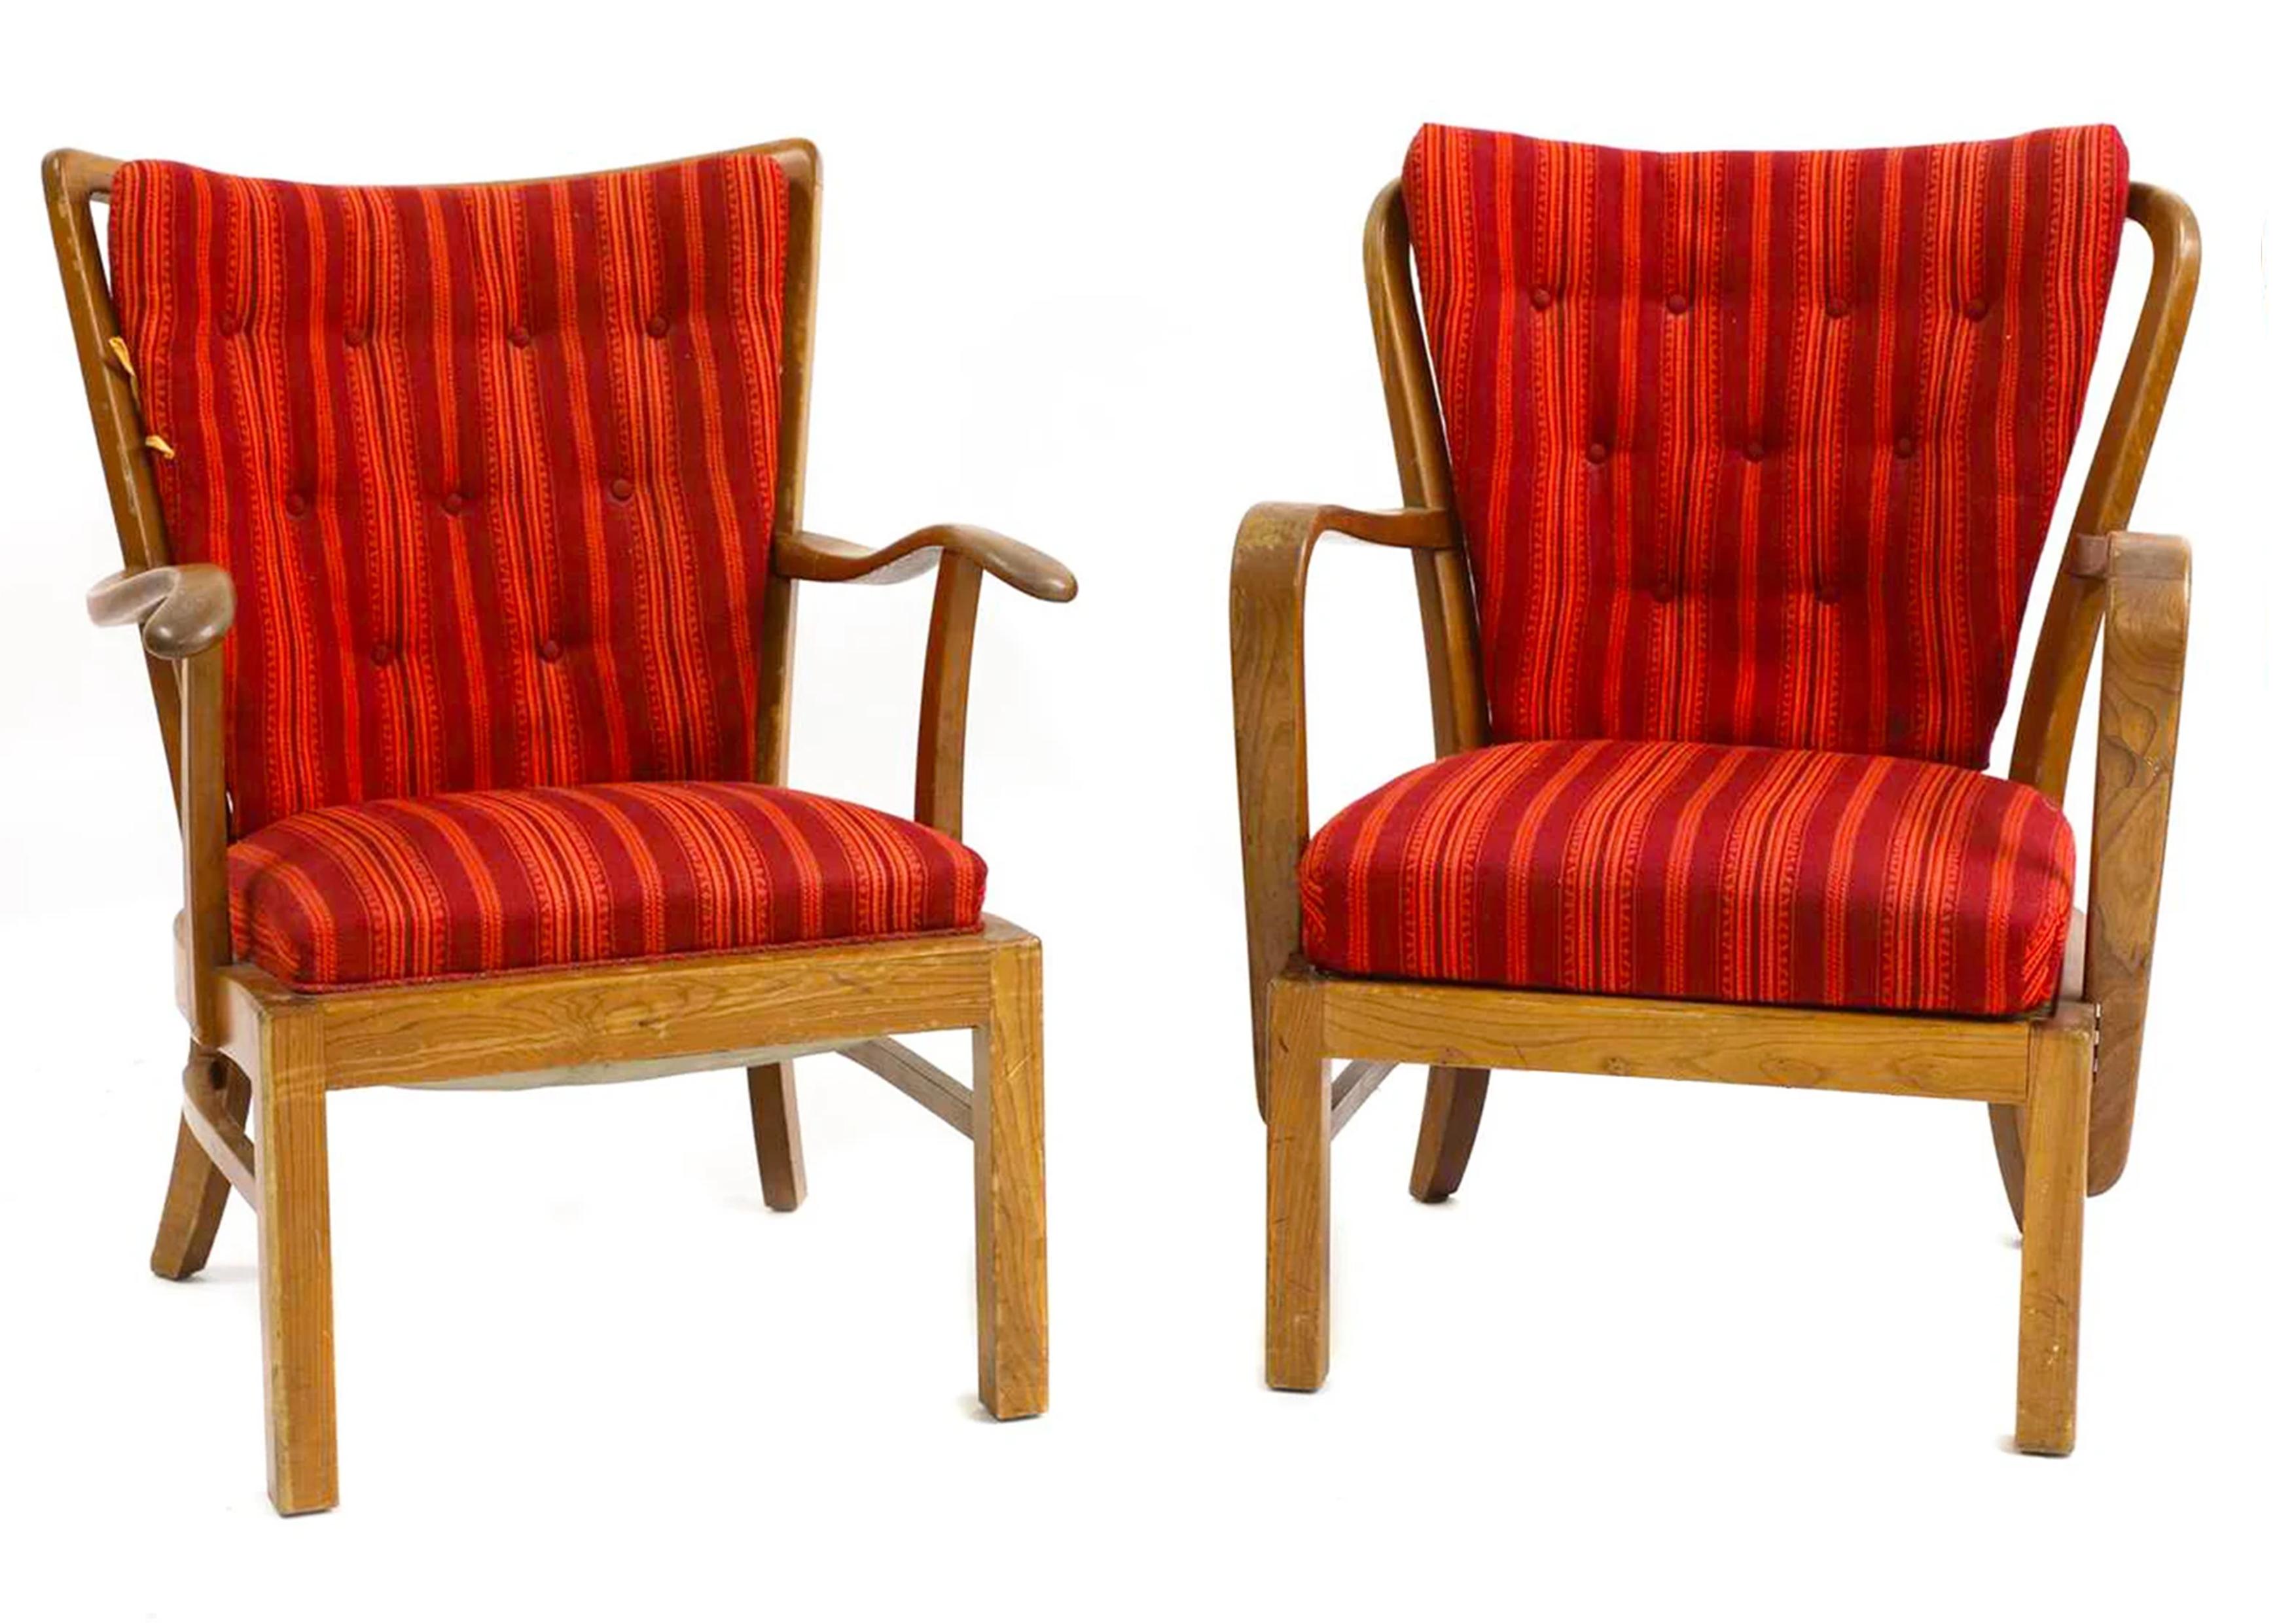 Paire de fauteuils à cadre ouvert en hêtre teinté, modèle 1628, avec tapisserie rouge, conçus par Søren Hansen et fabriqués au Danemark dans les années 1940. 

La marque Fritz Hansen FH est estampillée sur le dessous du châssis de la chaise.

Fritz